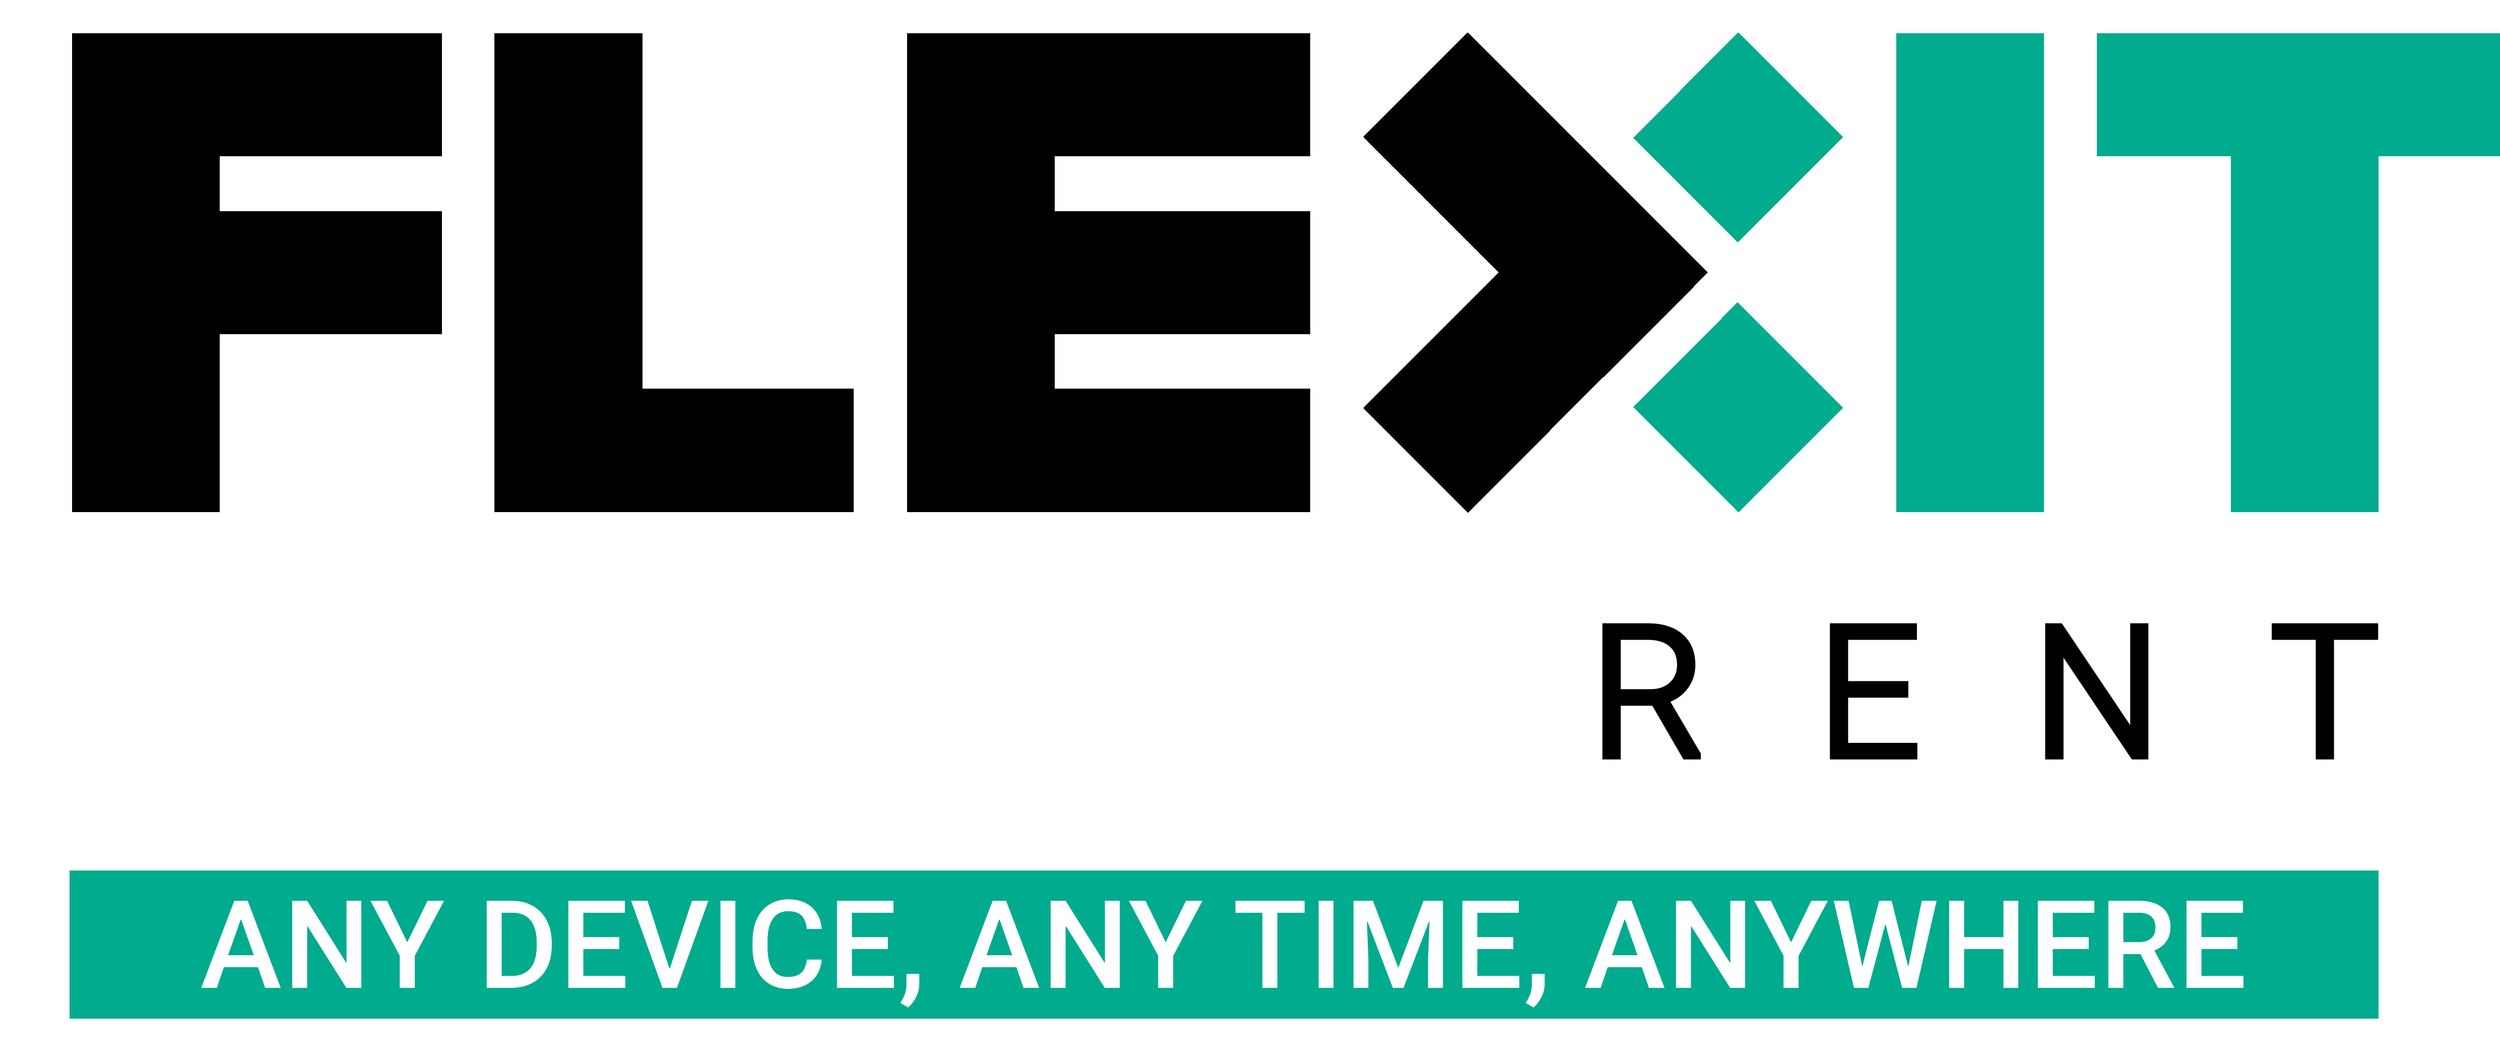 Flex IT Rent logo.png